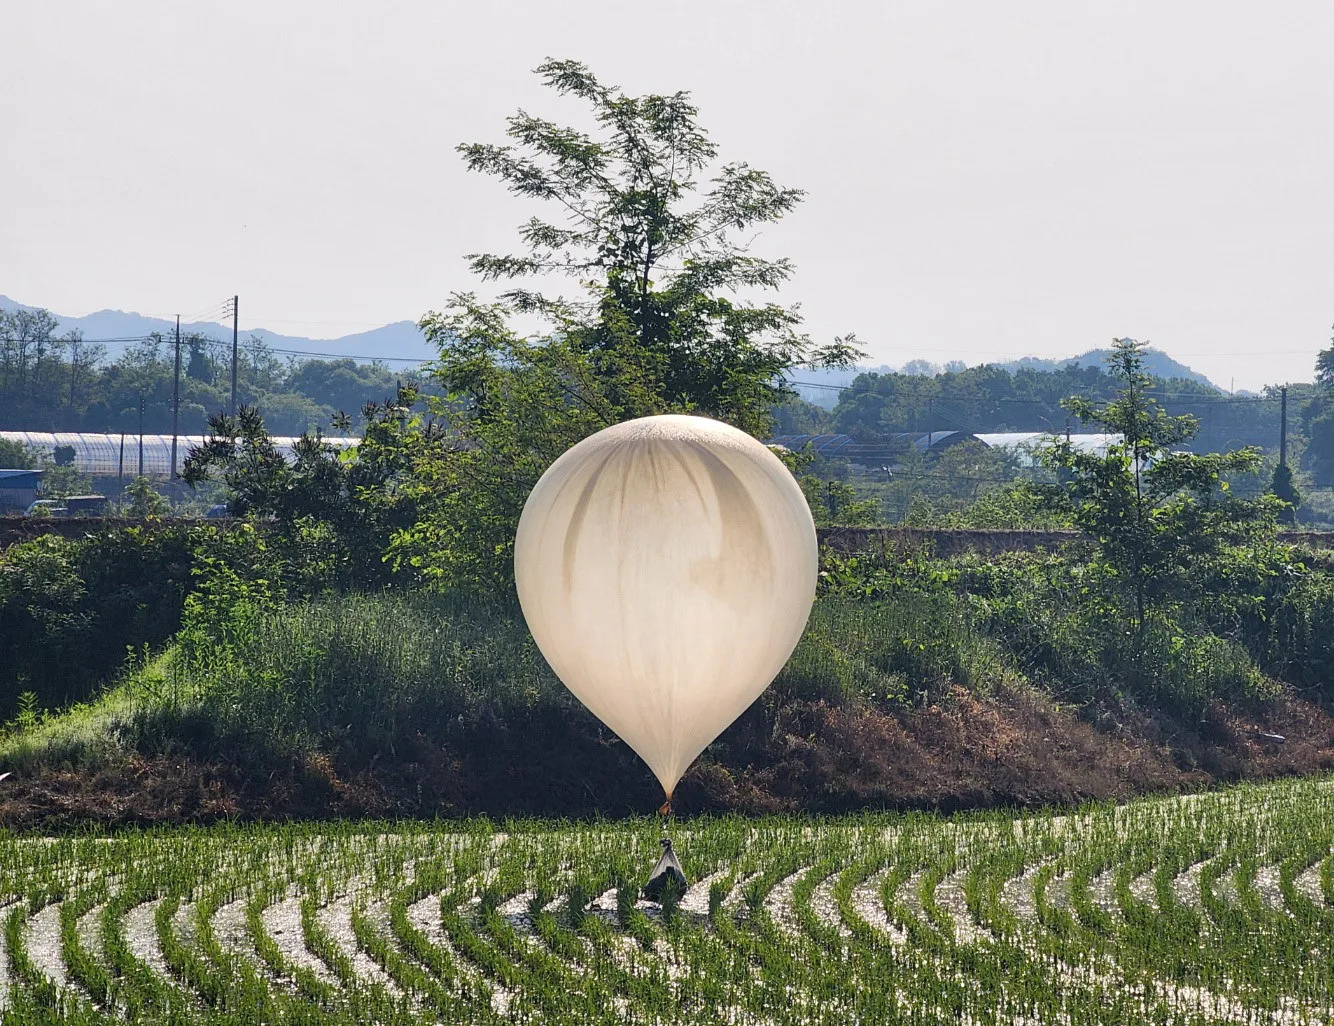 Coreia do Norte envia balões com excrementos pela fronteira, acusa Coreia do Sul